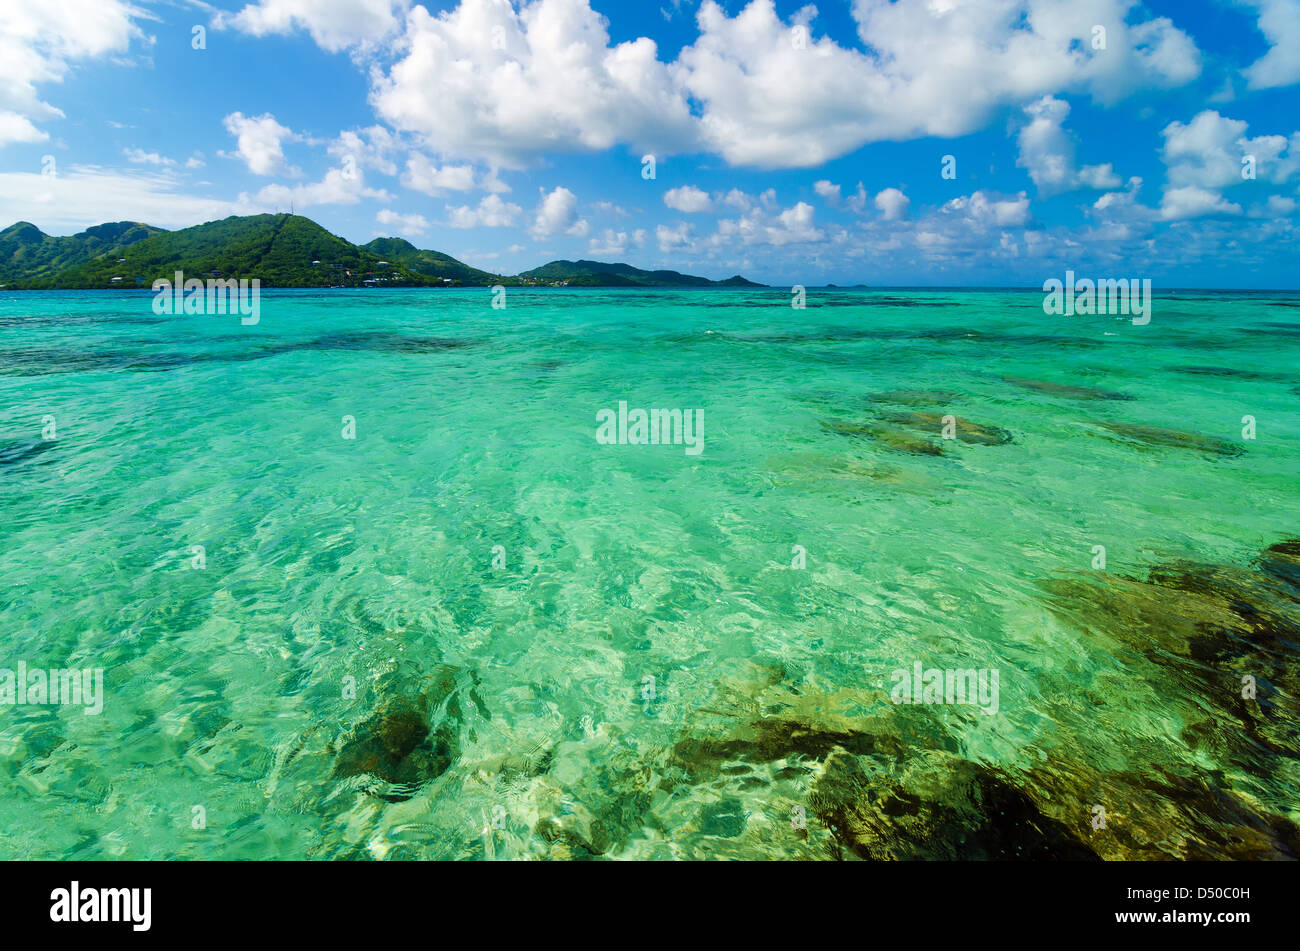 Bellissimi Caraibi turchesi acqua di mare con un isola tropicale in background Foto Stock